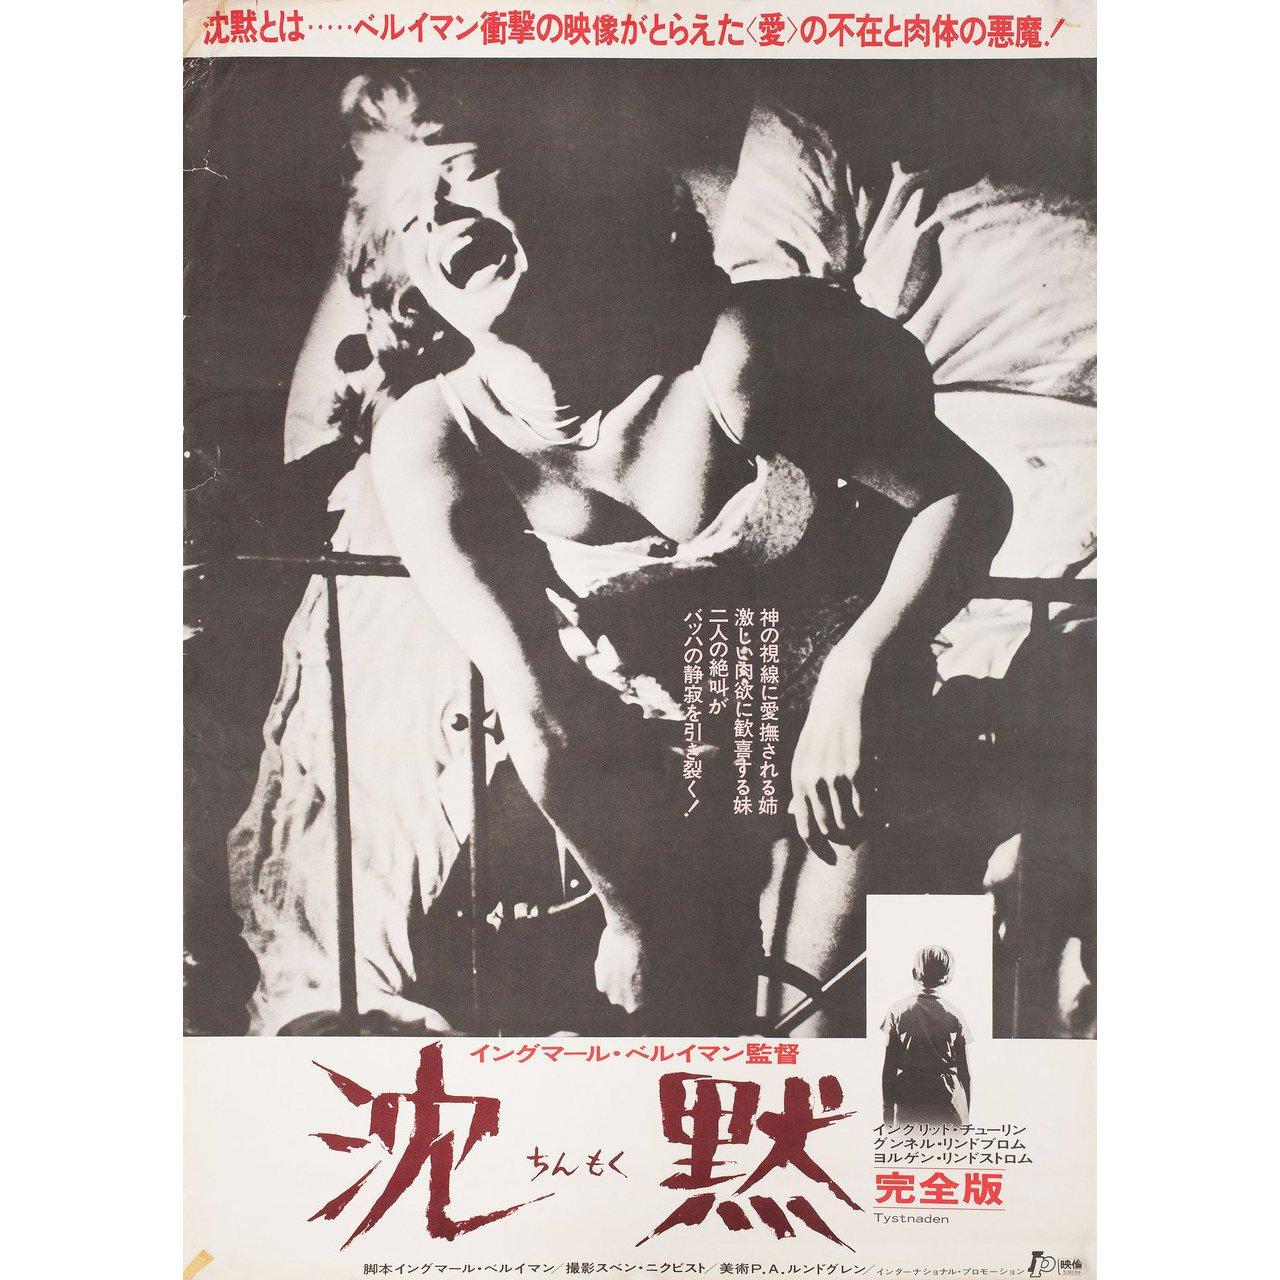 Originales japanisches B2-Plakat von 1978 für den Film Das Schweigen (Tystnaden) von Ingmar Bergman aus dem Jahr 1963 mit Ingrid Thulin / Gunnel Lindblom / Birger Malmsten / Hakan Jahnberg. Guter bis sehr guter Zustand, gerollt mit Randeinrissen.